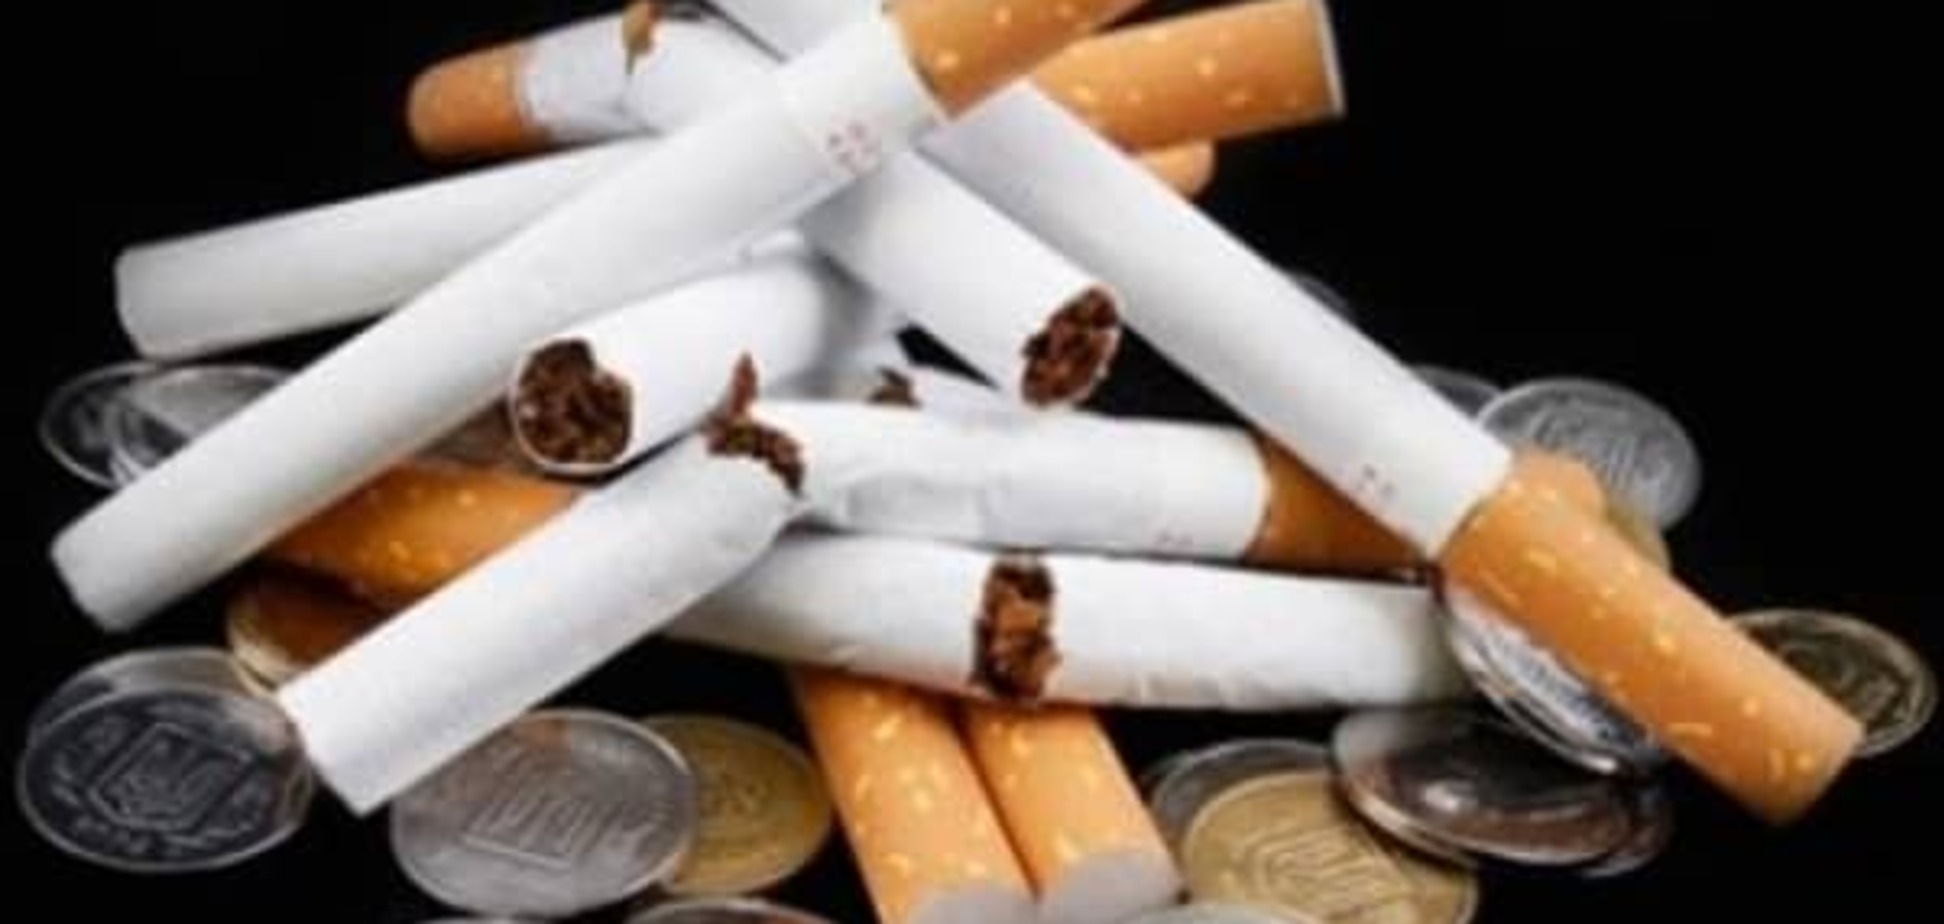 Сигареты в Украине могут стать предметом роскоши — эксперты